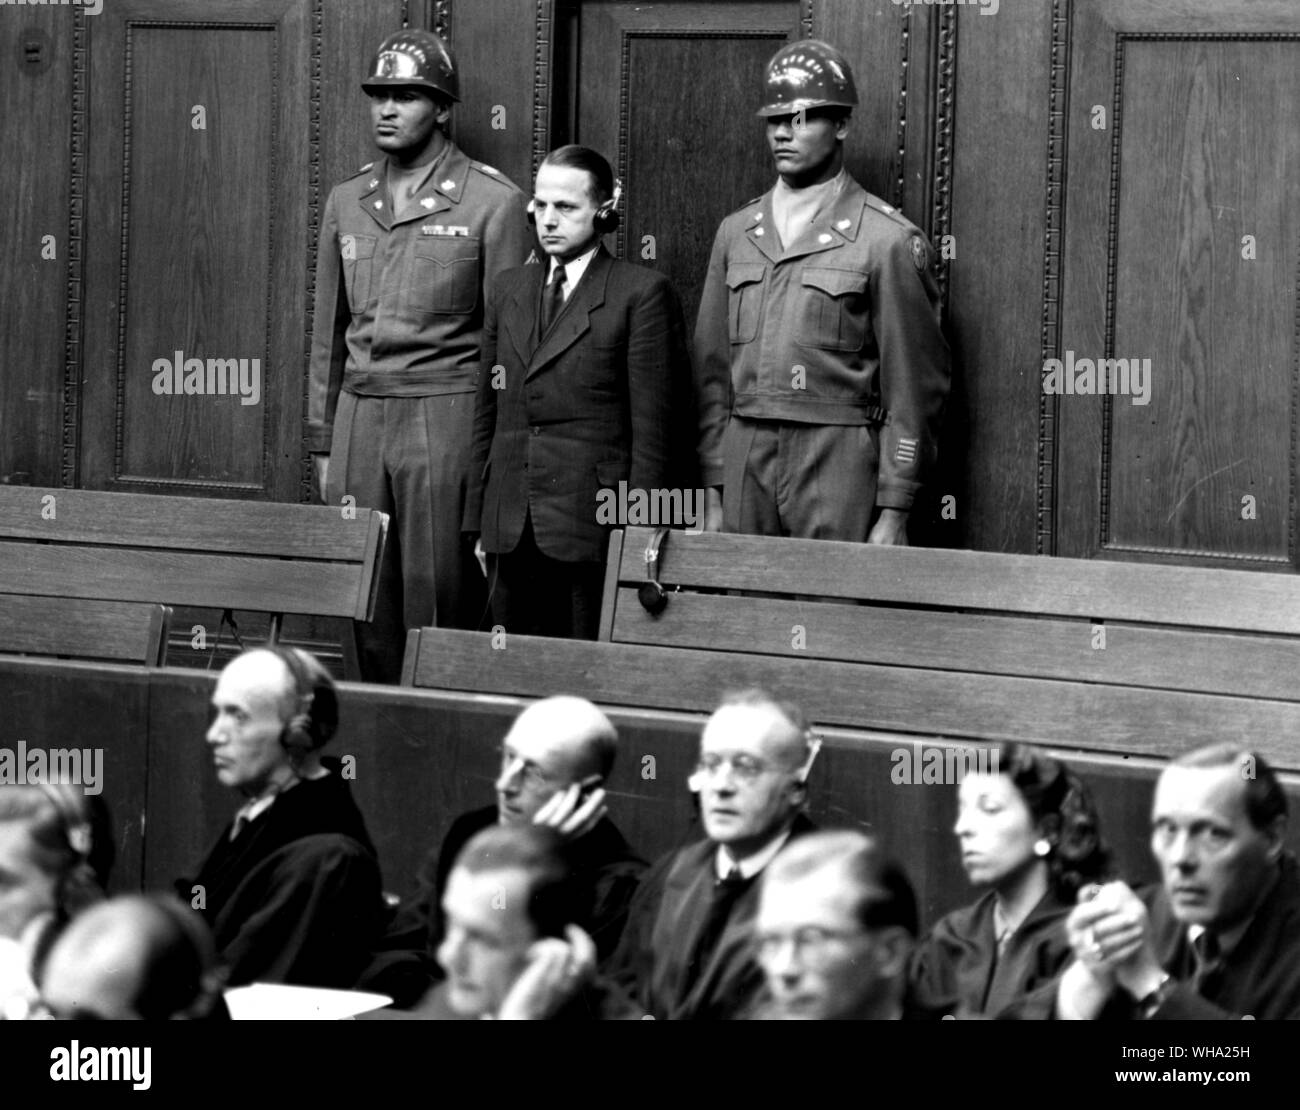 WW2: Otte Ohlendorf audiencia leer su sentencia de muerte en Nuremberg, Alemania, 1946. Nuremenburg juicios por los criminales de guerra alemanes. Foto de stock